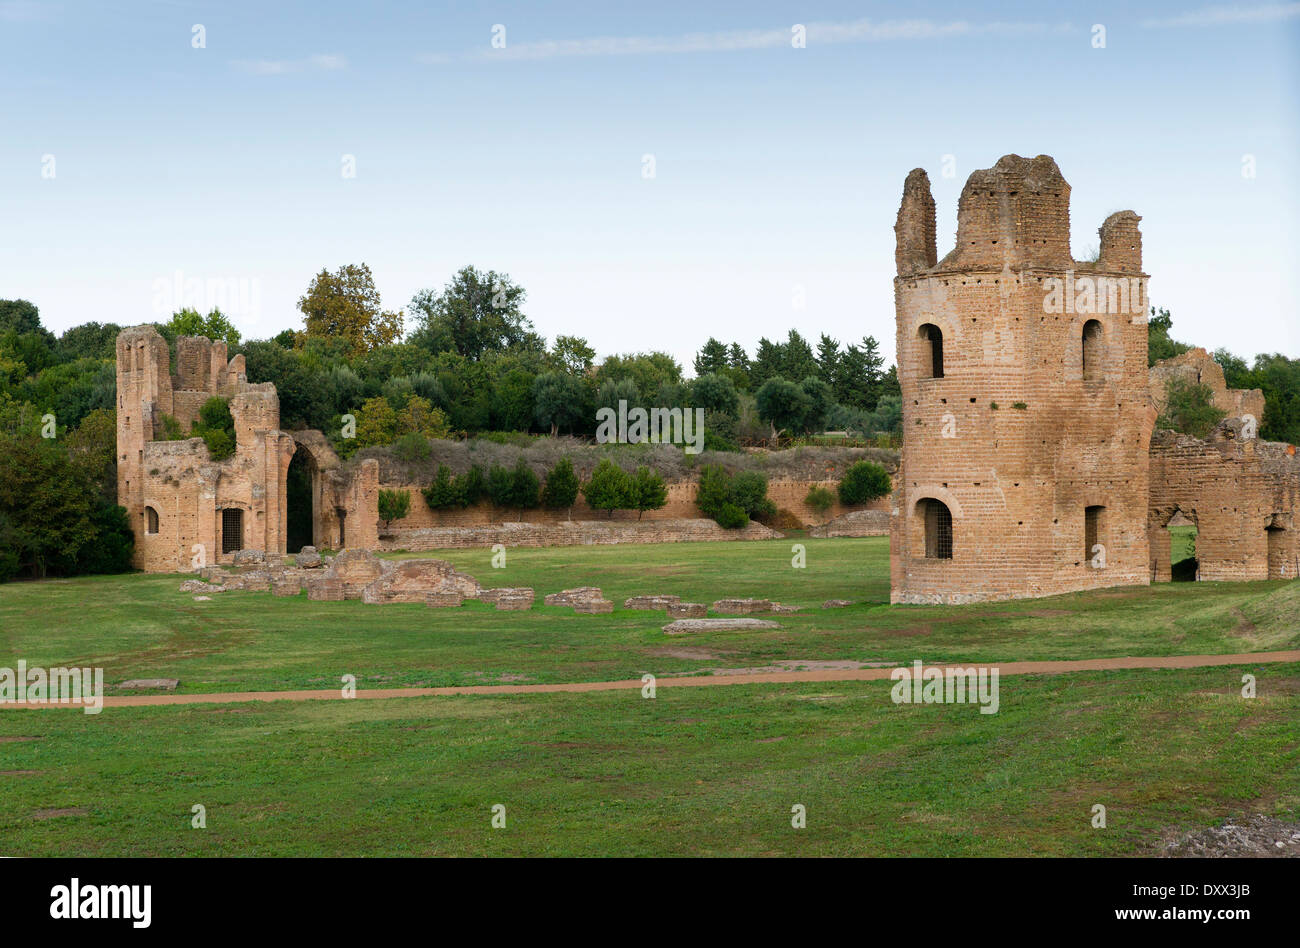 Villa von Massenzio, Via Appia Antica, Rom, Latium, Italien Stockfoto